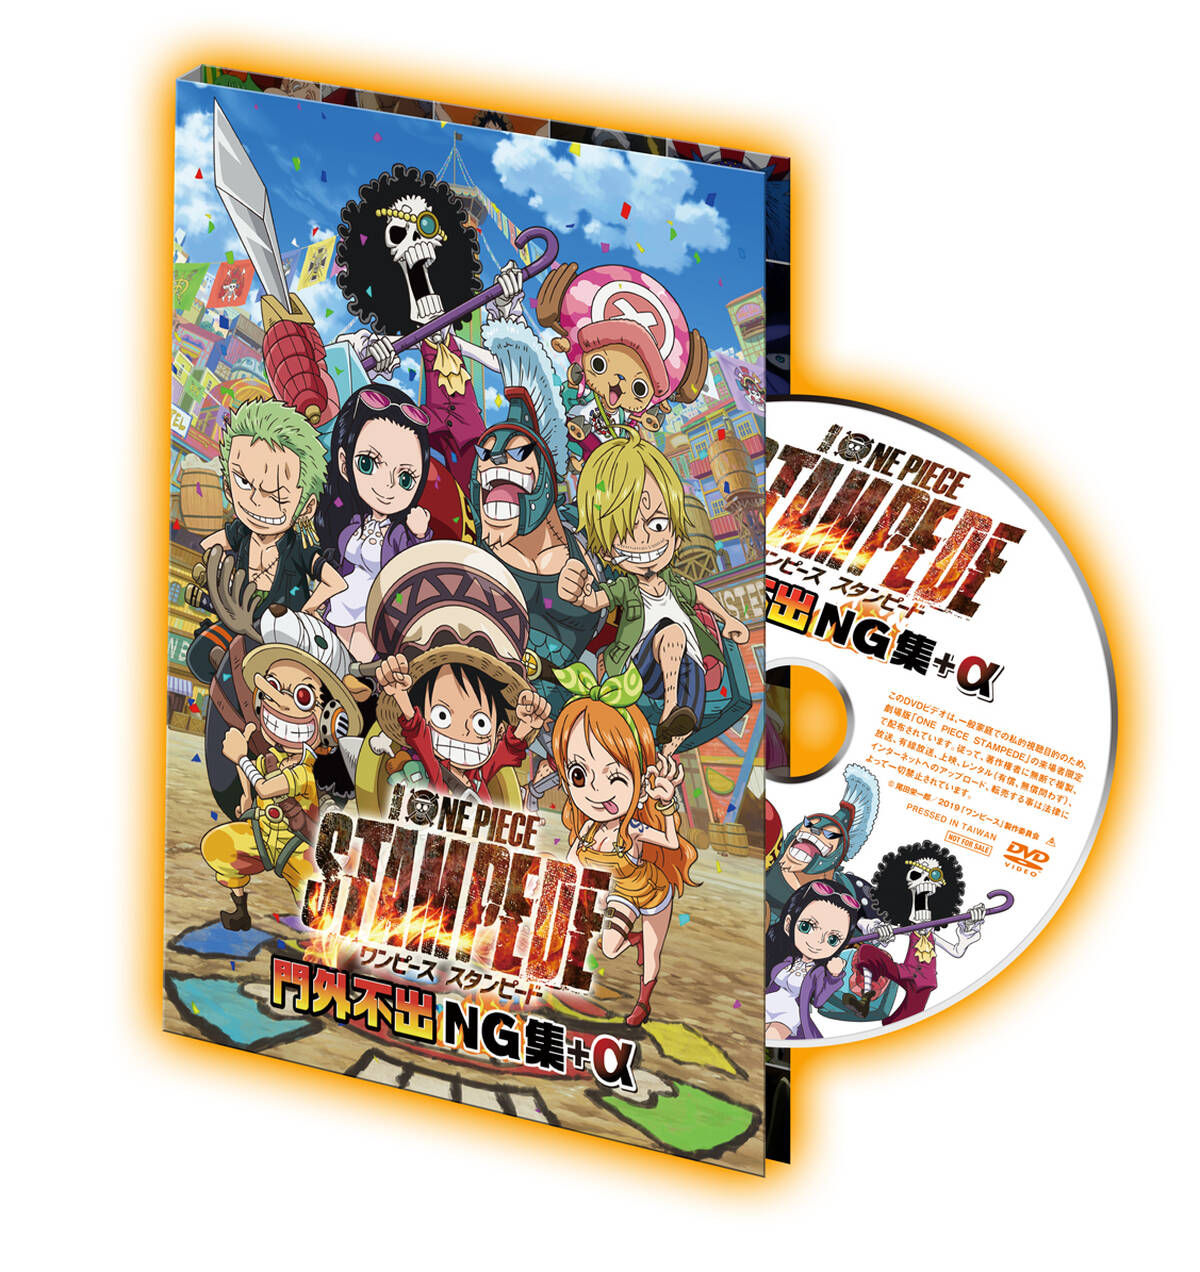 劇場版 One Piece Stampede 第3週入場者特典が 門外不出ng集 A Dvd に決定 全国合計50万名限定でプレゼント アキバ総研